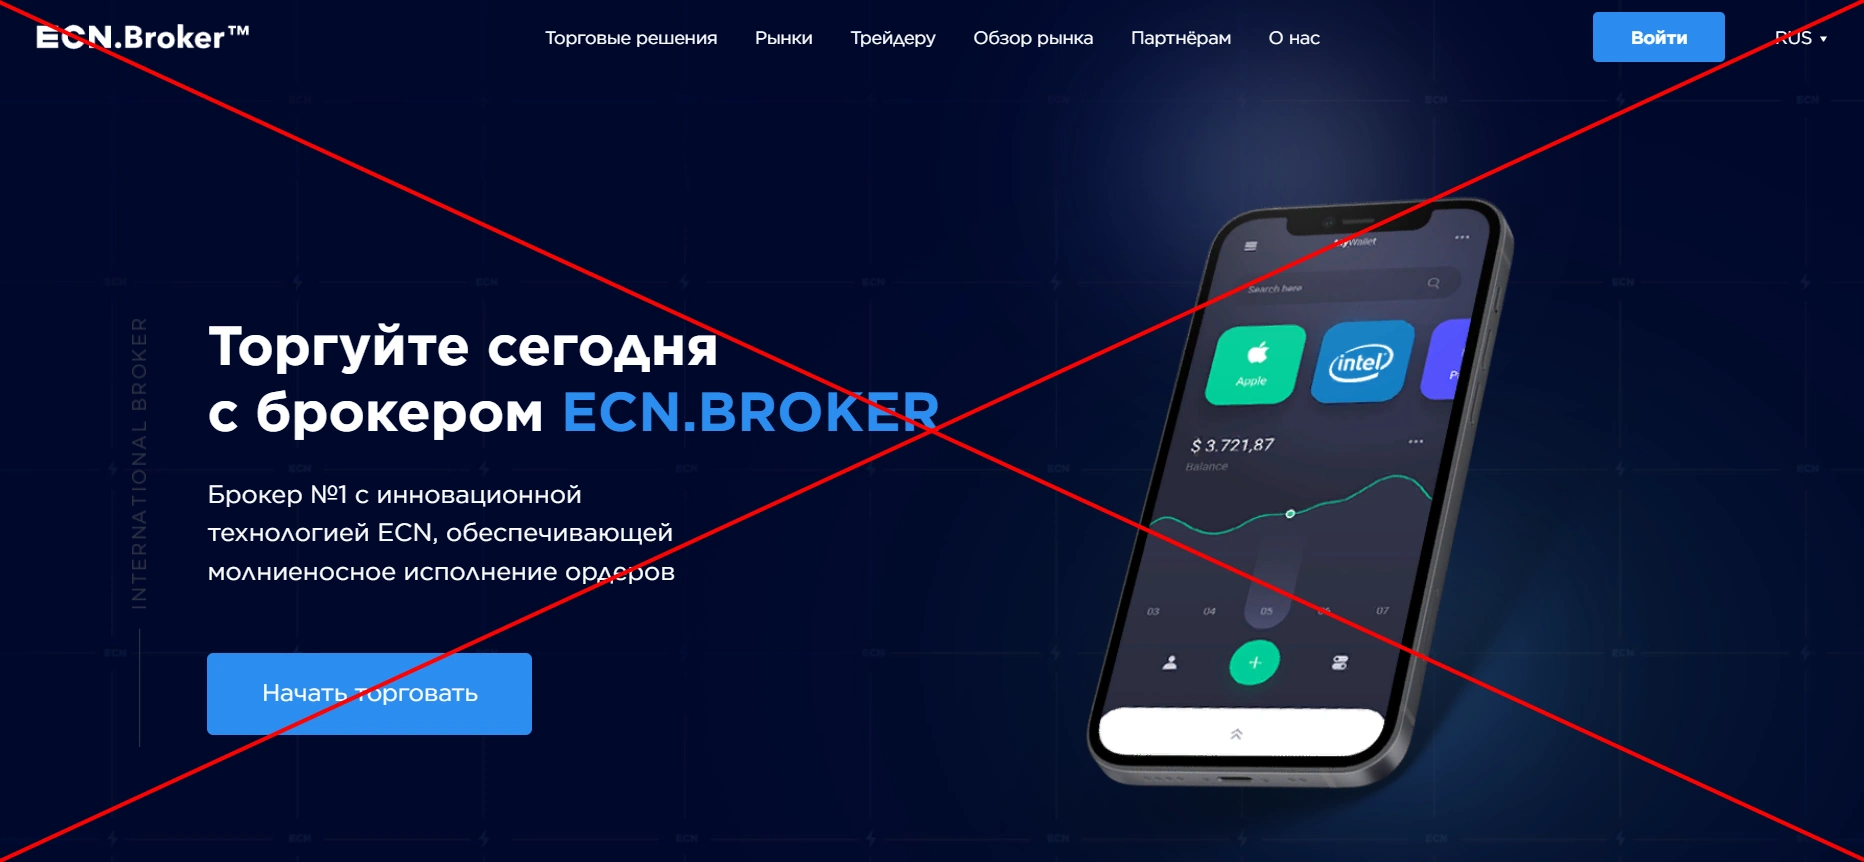 ECN.Broker отзывы о компании - сайт ecnbroker.site